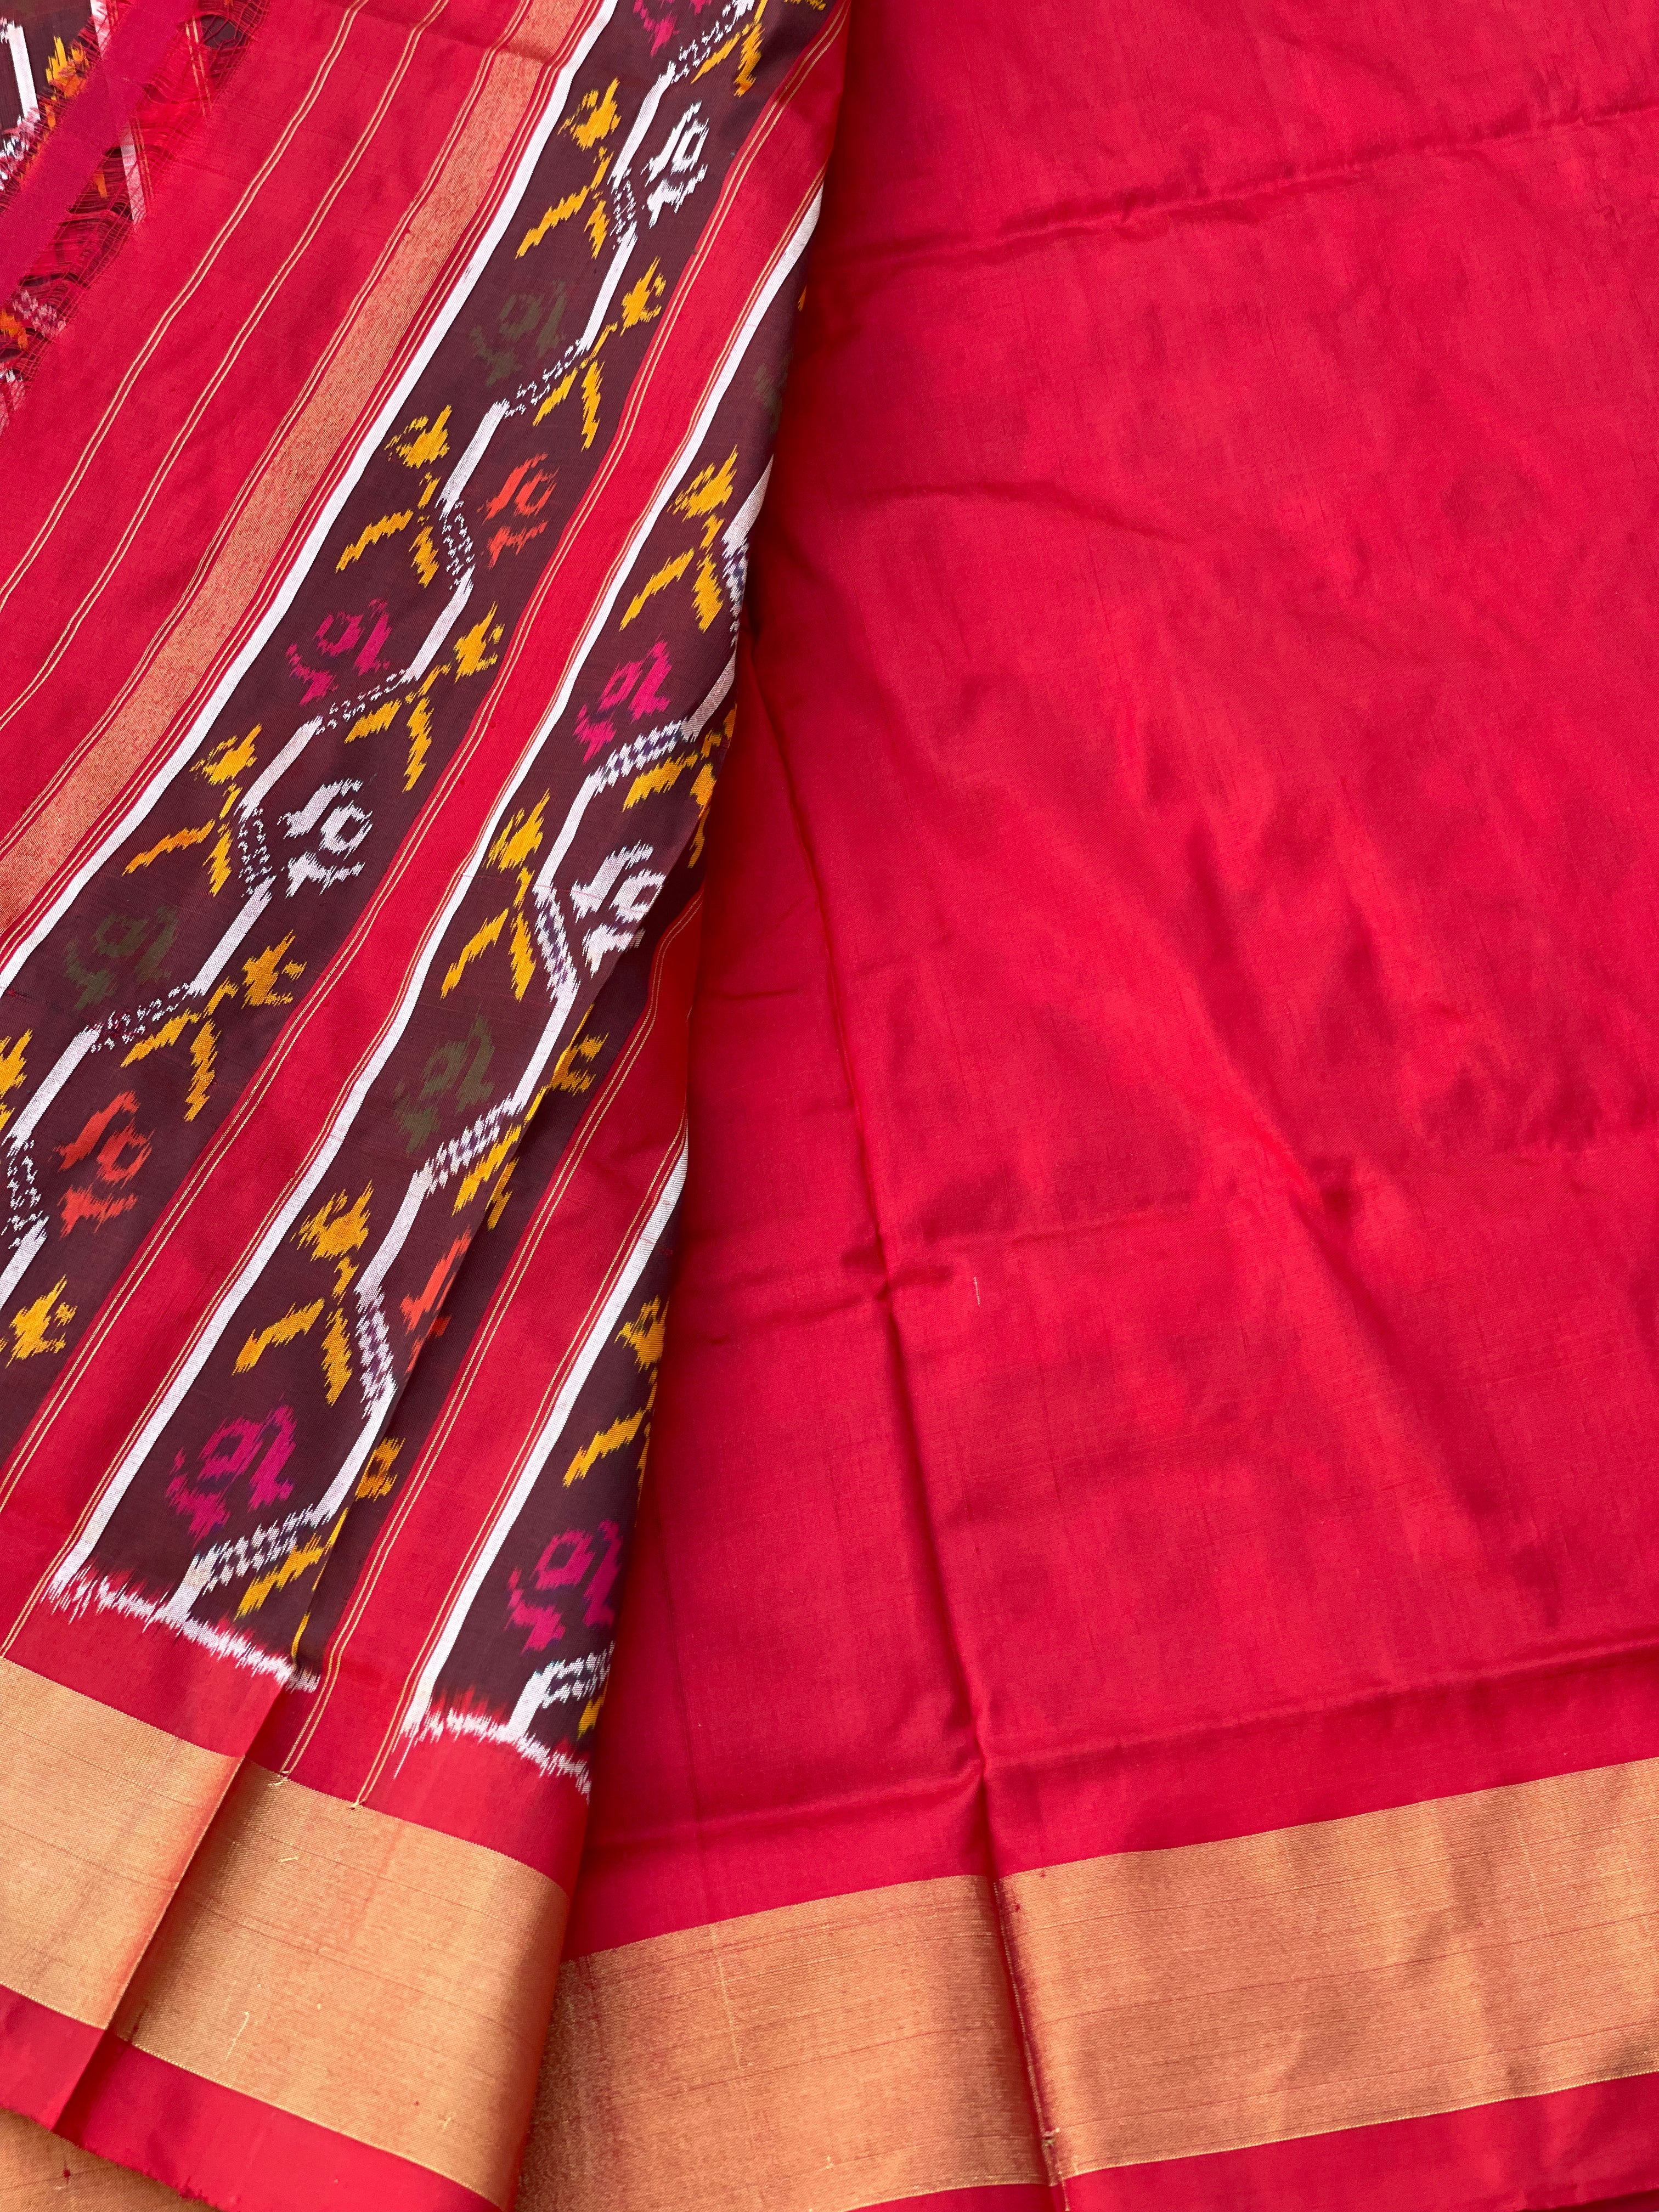 Patola Inspired silk Ikkat Saree with flower basket motifs